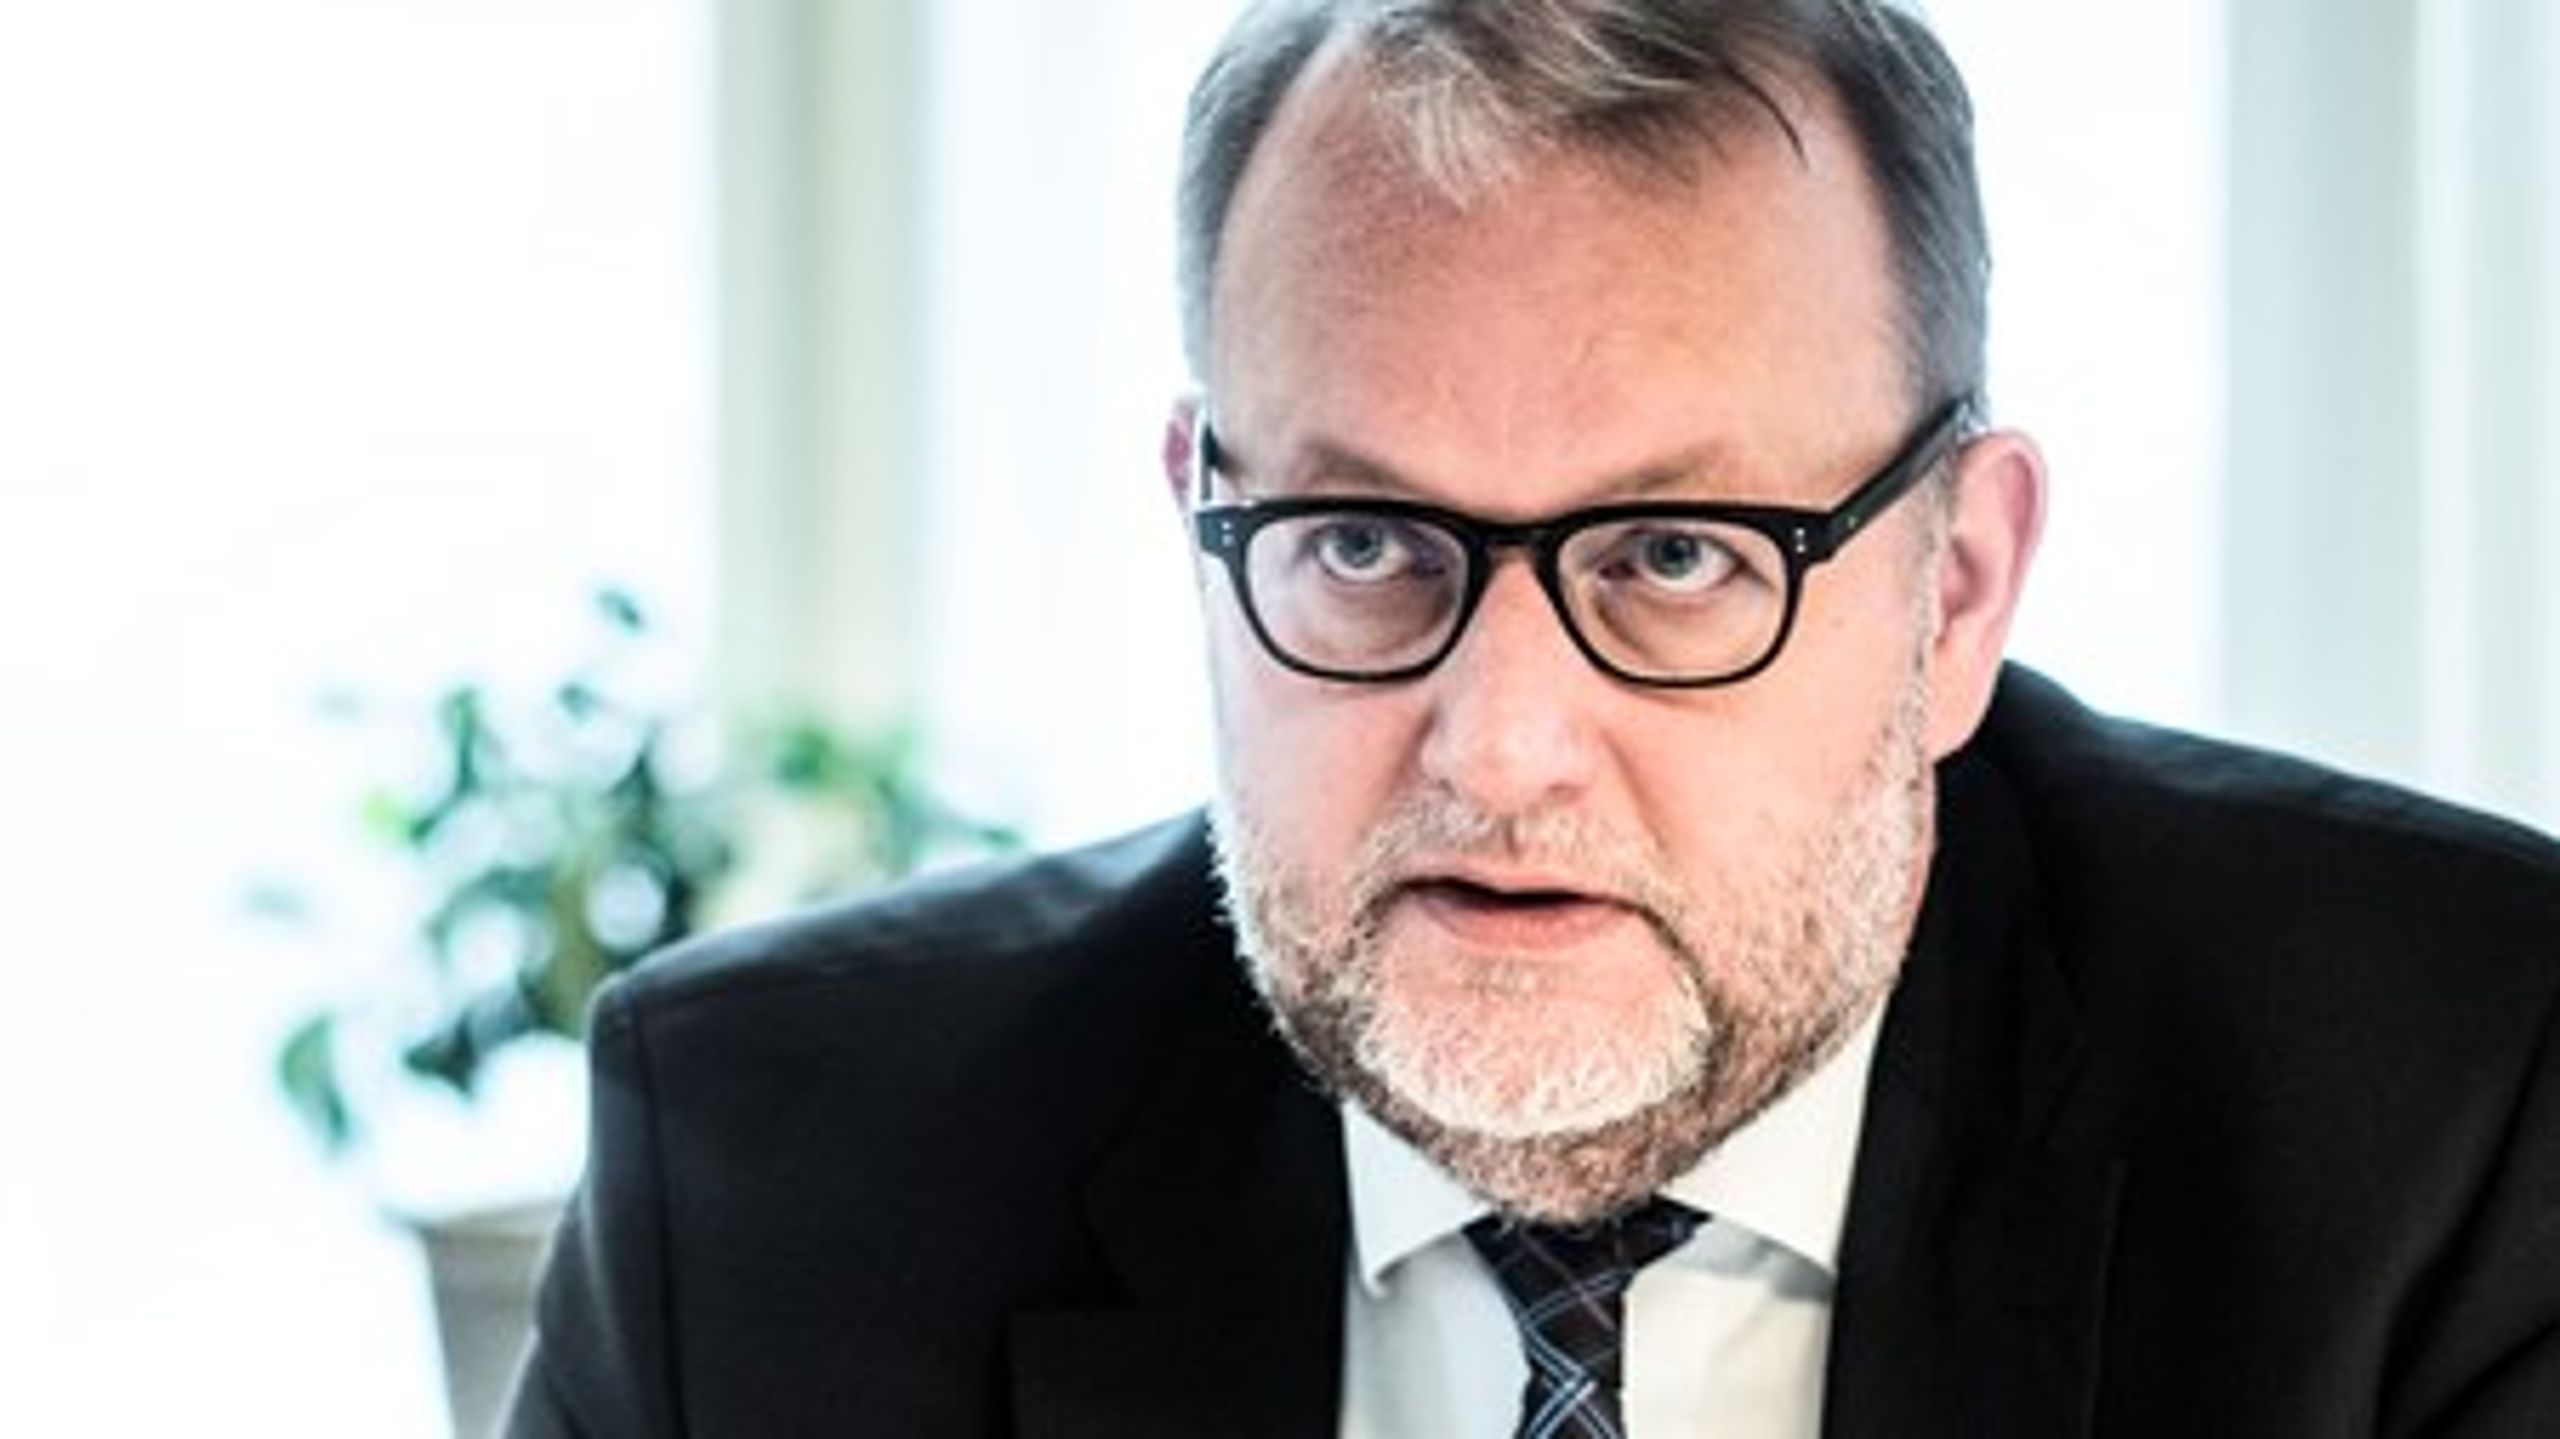 Energisparerådet skal nedlægges og i stedet erstattes af to nye paneler, foreslår energi-, forsynings- og klimaminister Lars Chr. Lilleholt (V).